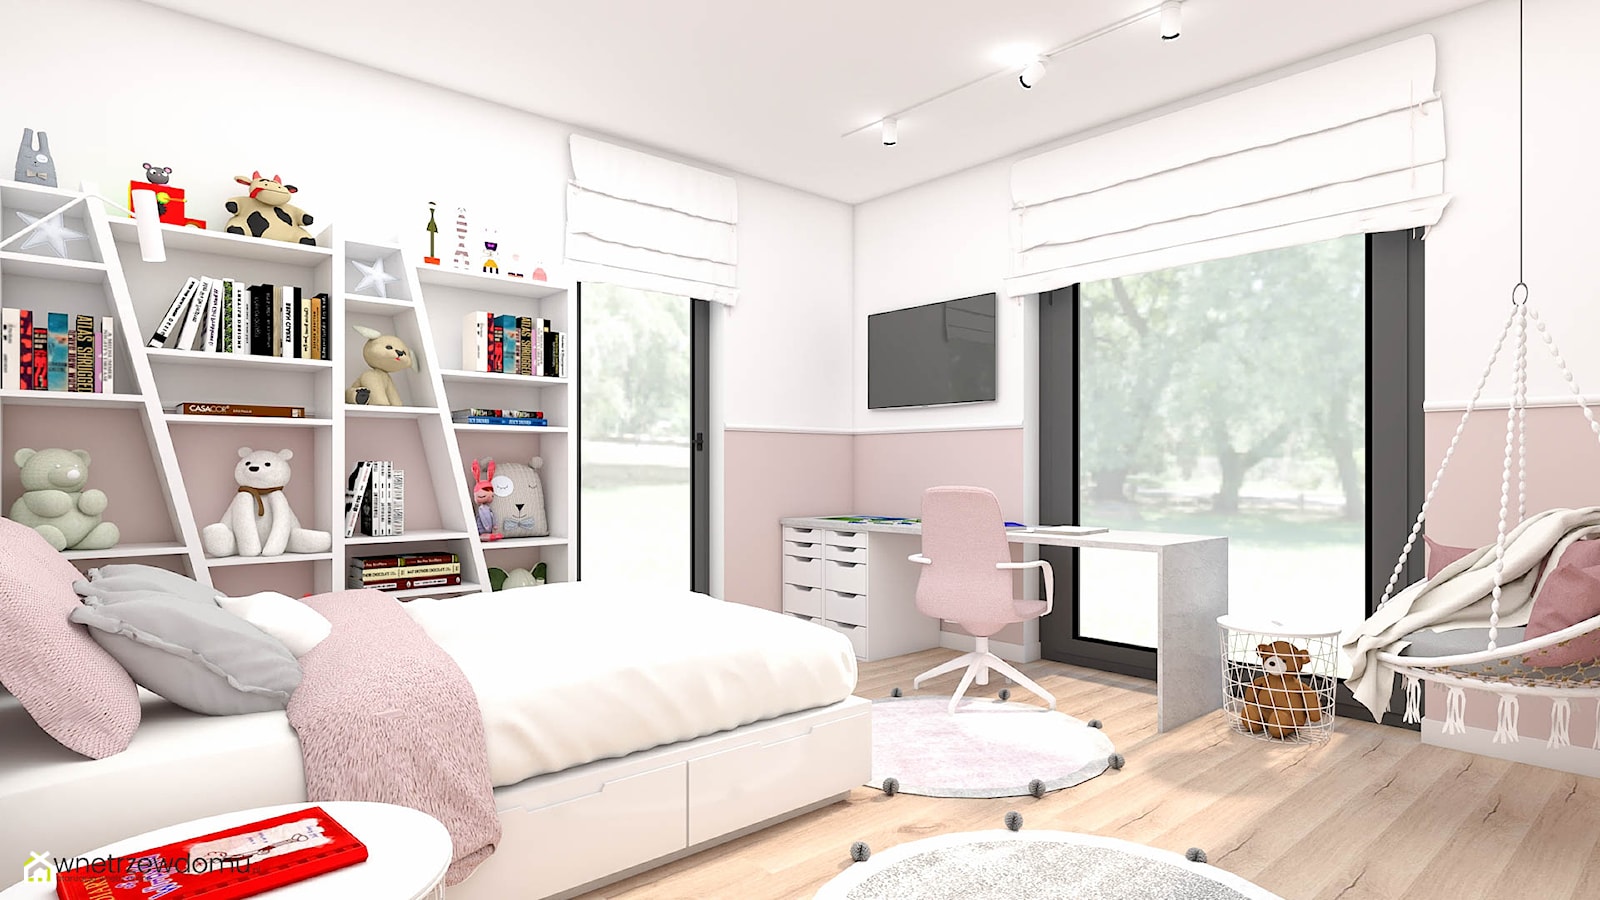 Sypialnia z panelami tapicerowanymi dla dziewczynki - zdjęcie od wnetrzewdomu - Homebook